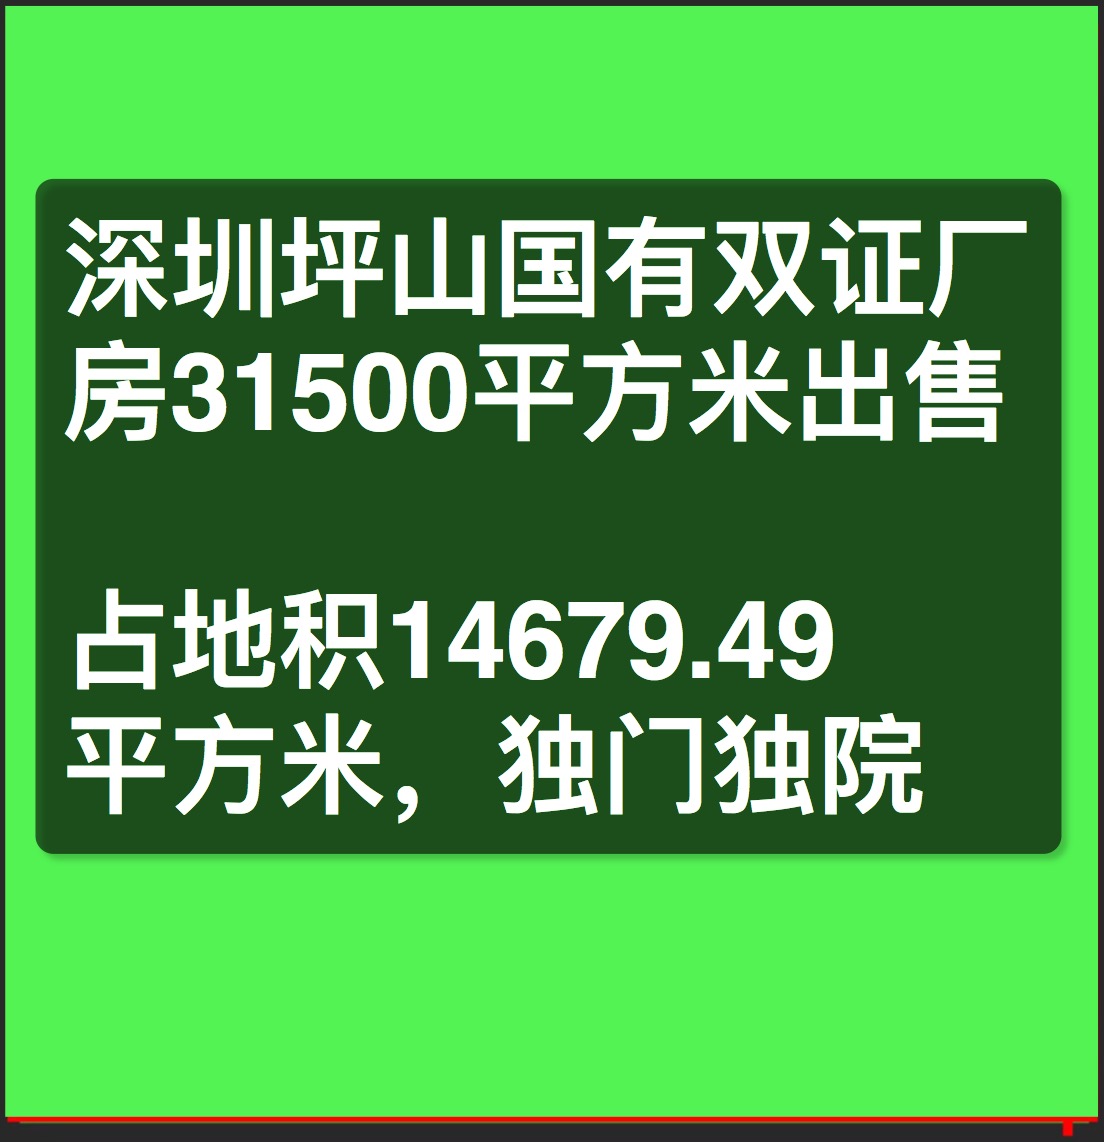 深圳坪山大工业区国有双证厂房31500平方米出售